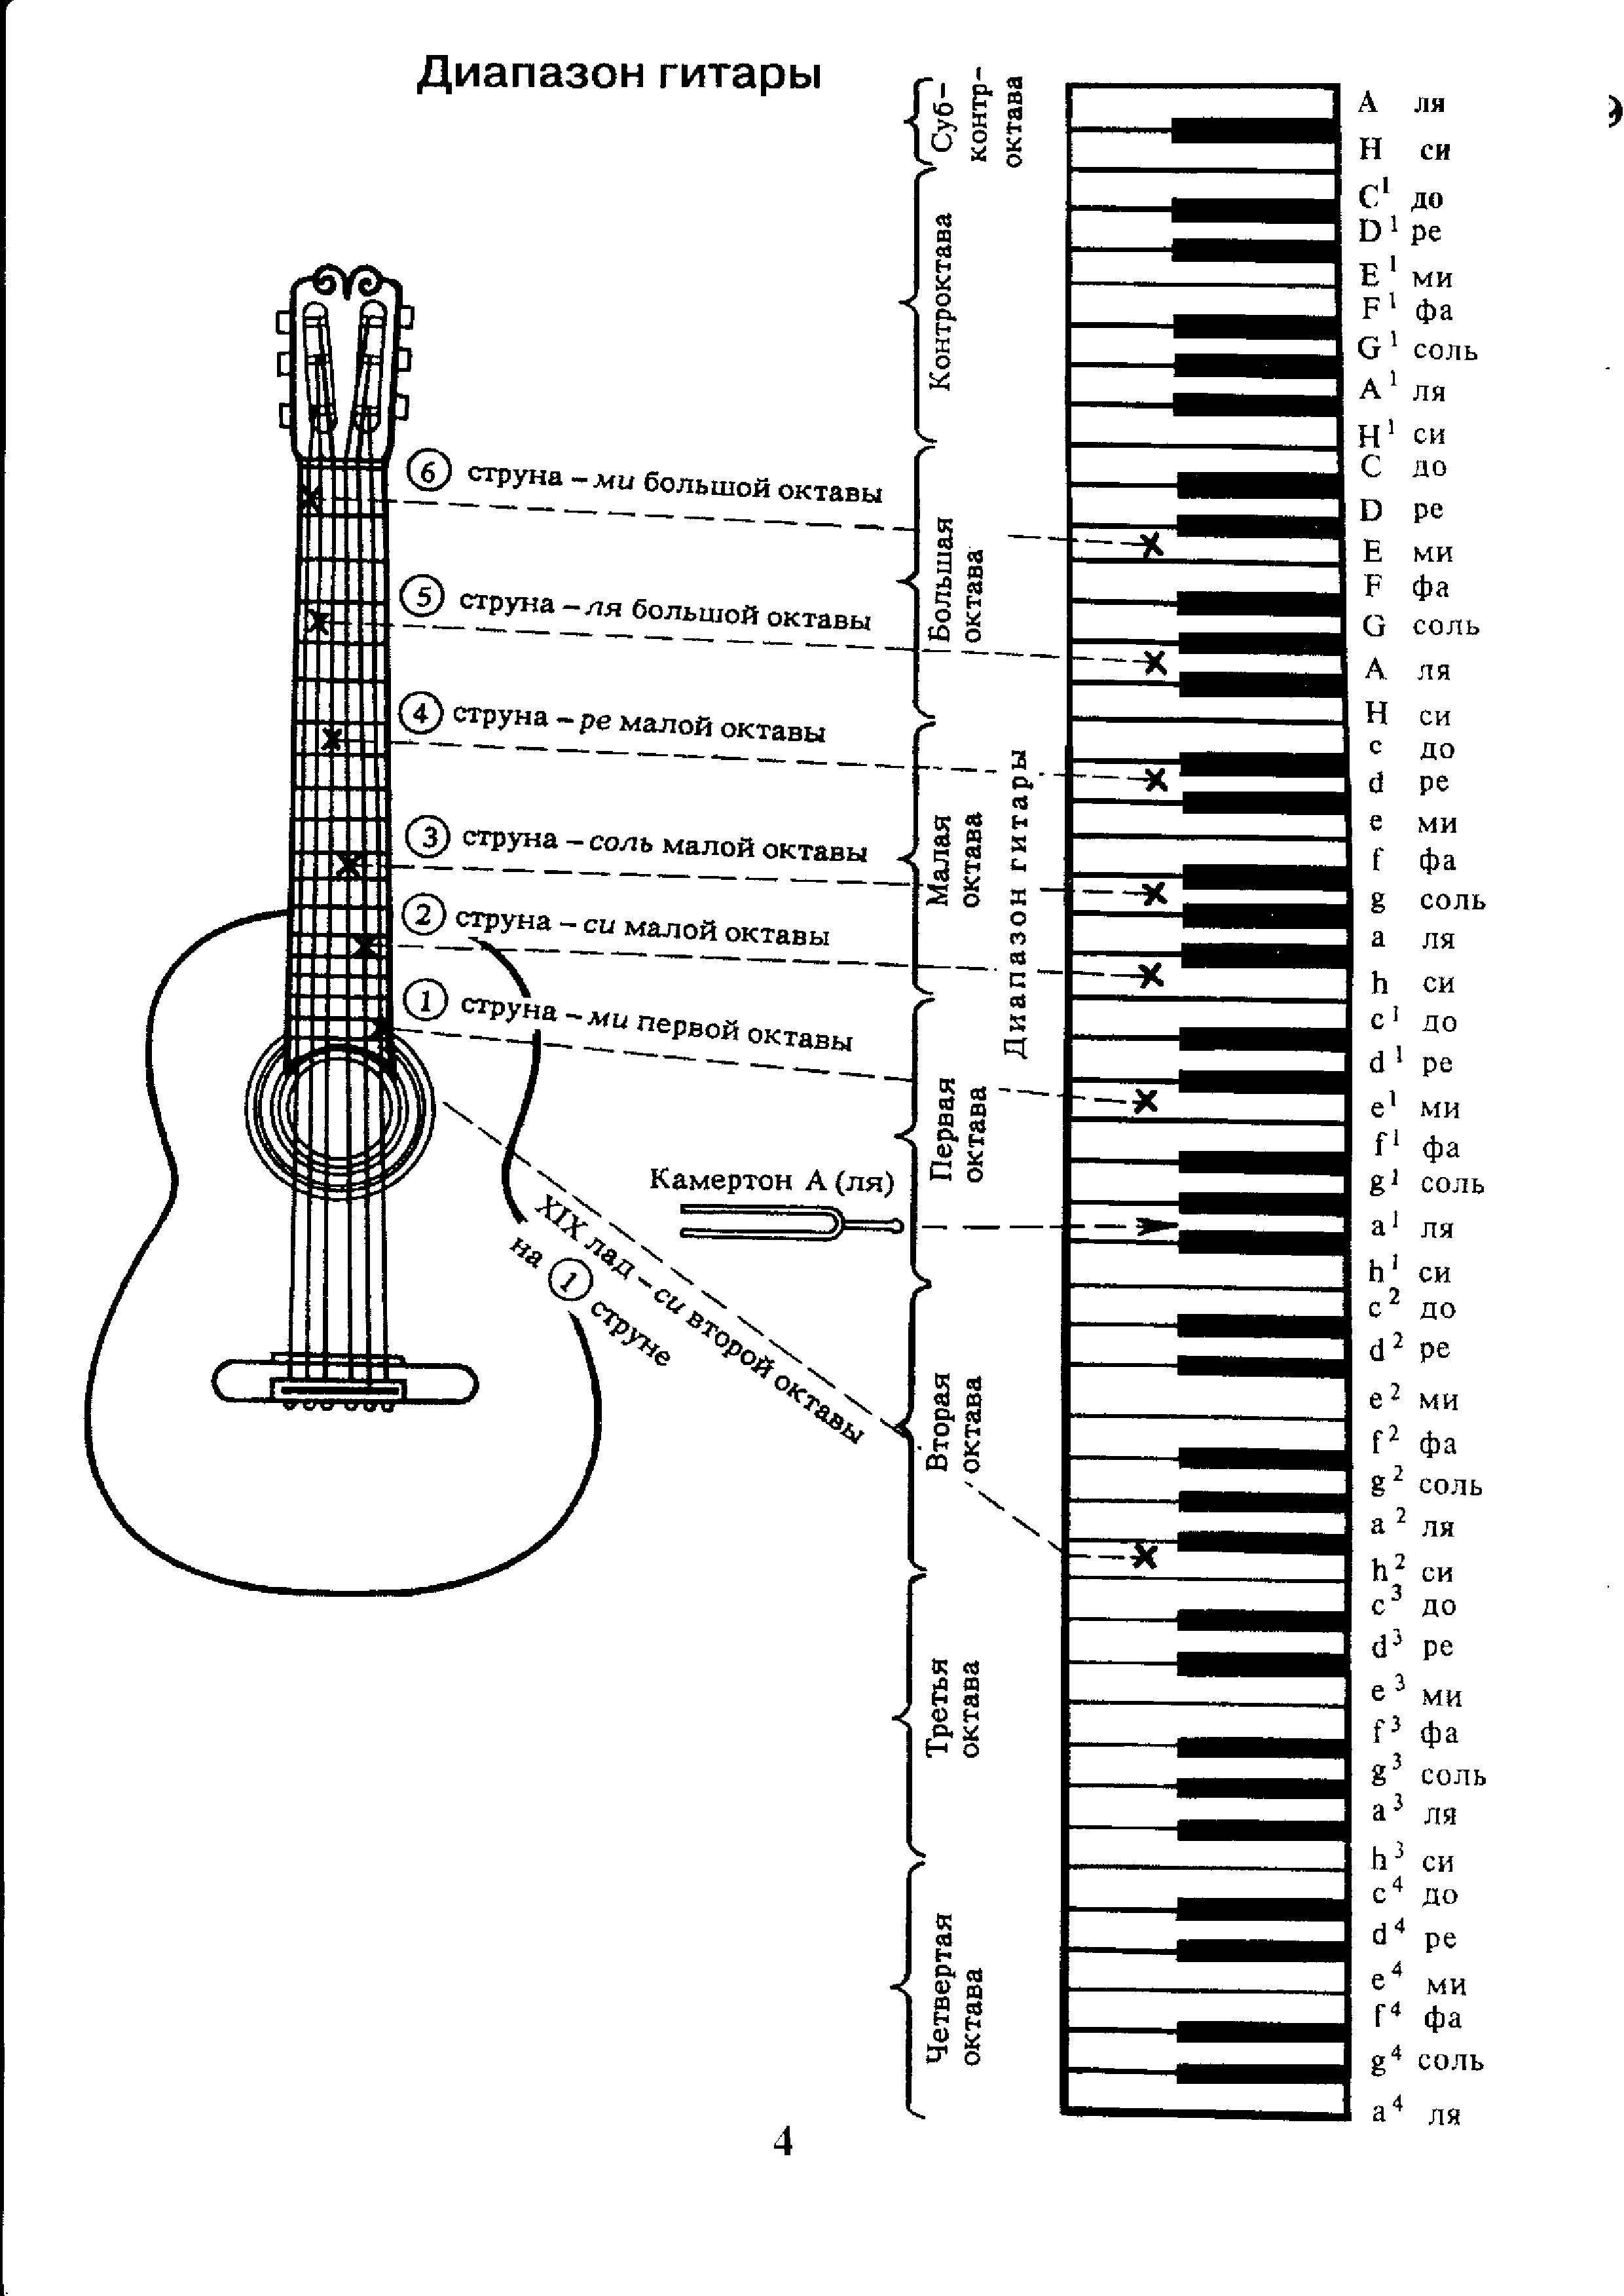 Ноты на шестиструнной гитаре. Аппликатура аккордов для гитары 6 струн для начинающих. Ноты на гитарном грифе 6 струнной. Лады на 6 струнной гитаре для начинающих. Схема гитары классической 6 струнной.